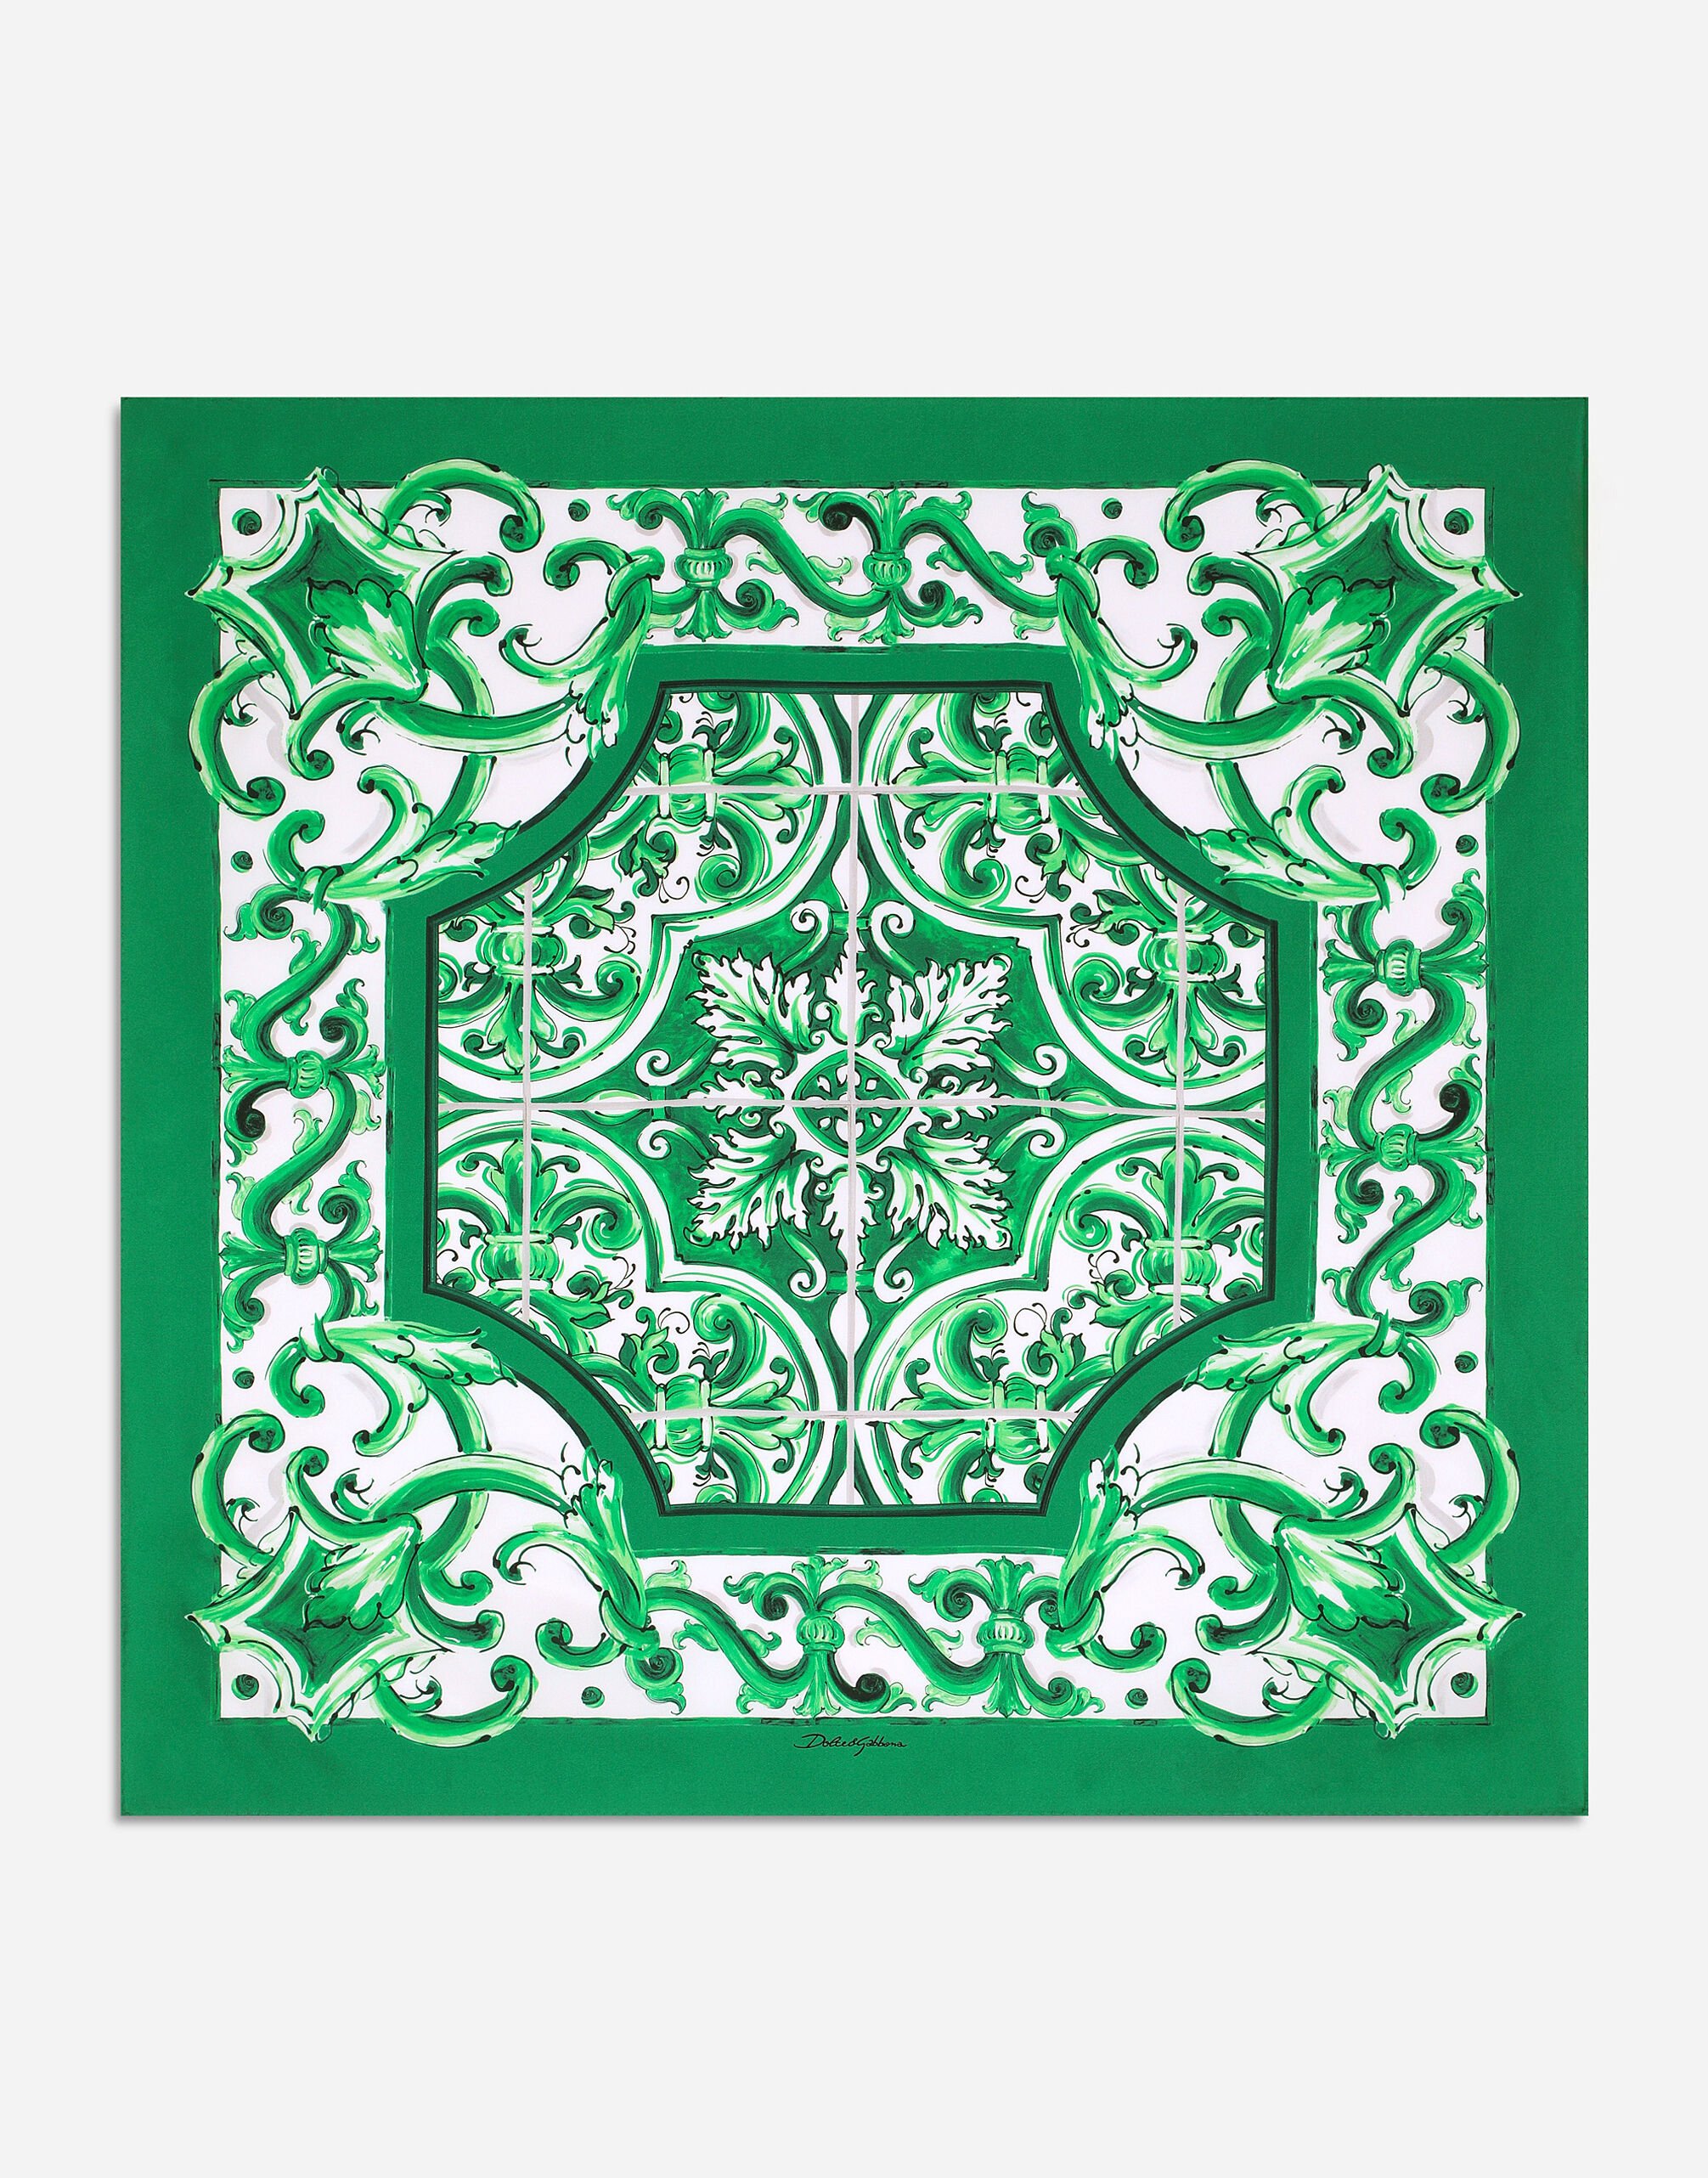 Dolce & Gabbana Majolica-print silk bandanna (70x70) Green BM2335AG182